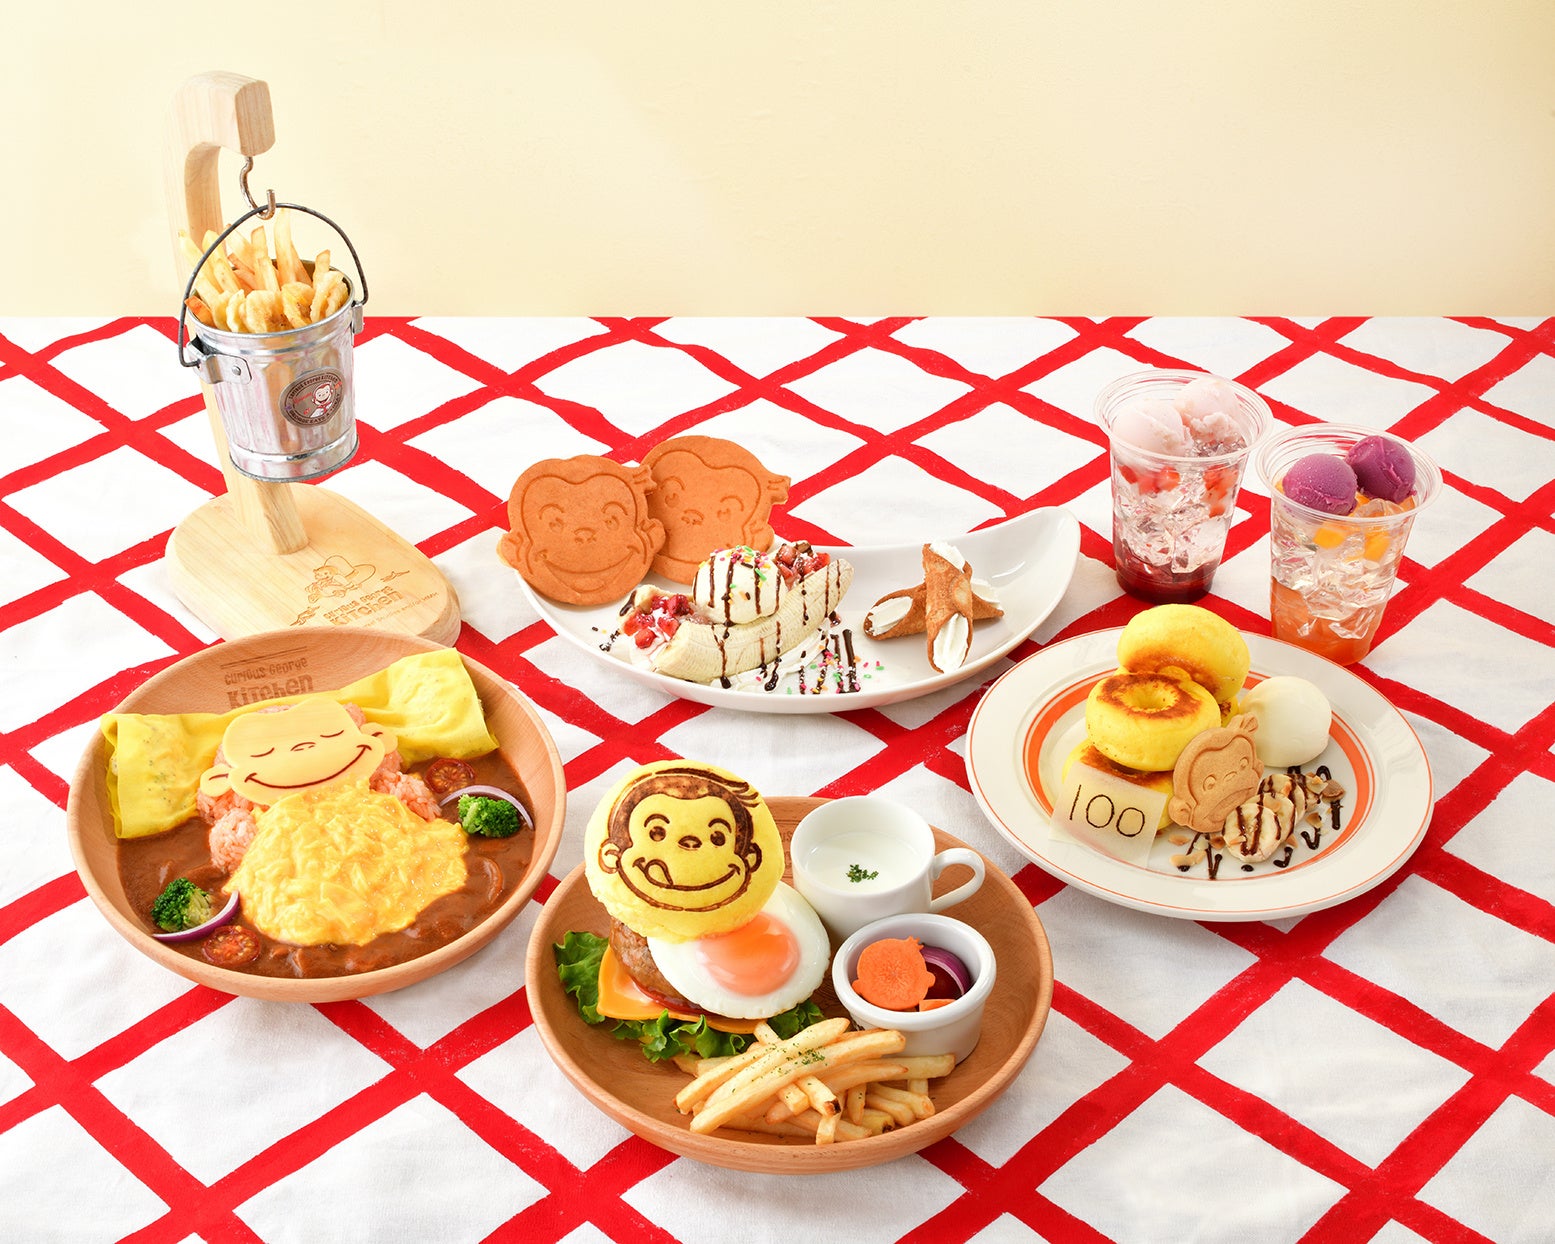 続報！「おさるのジョージ」のダイニングカフェ「Curious George Kitchen」が7月11日、東京ソラマチにオープン！新作メニューや充実のテイクアウトメニューの詳細を公開！